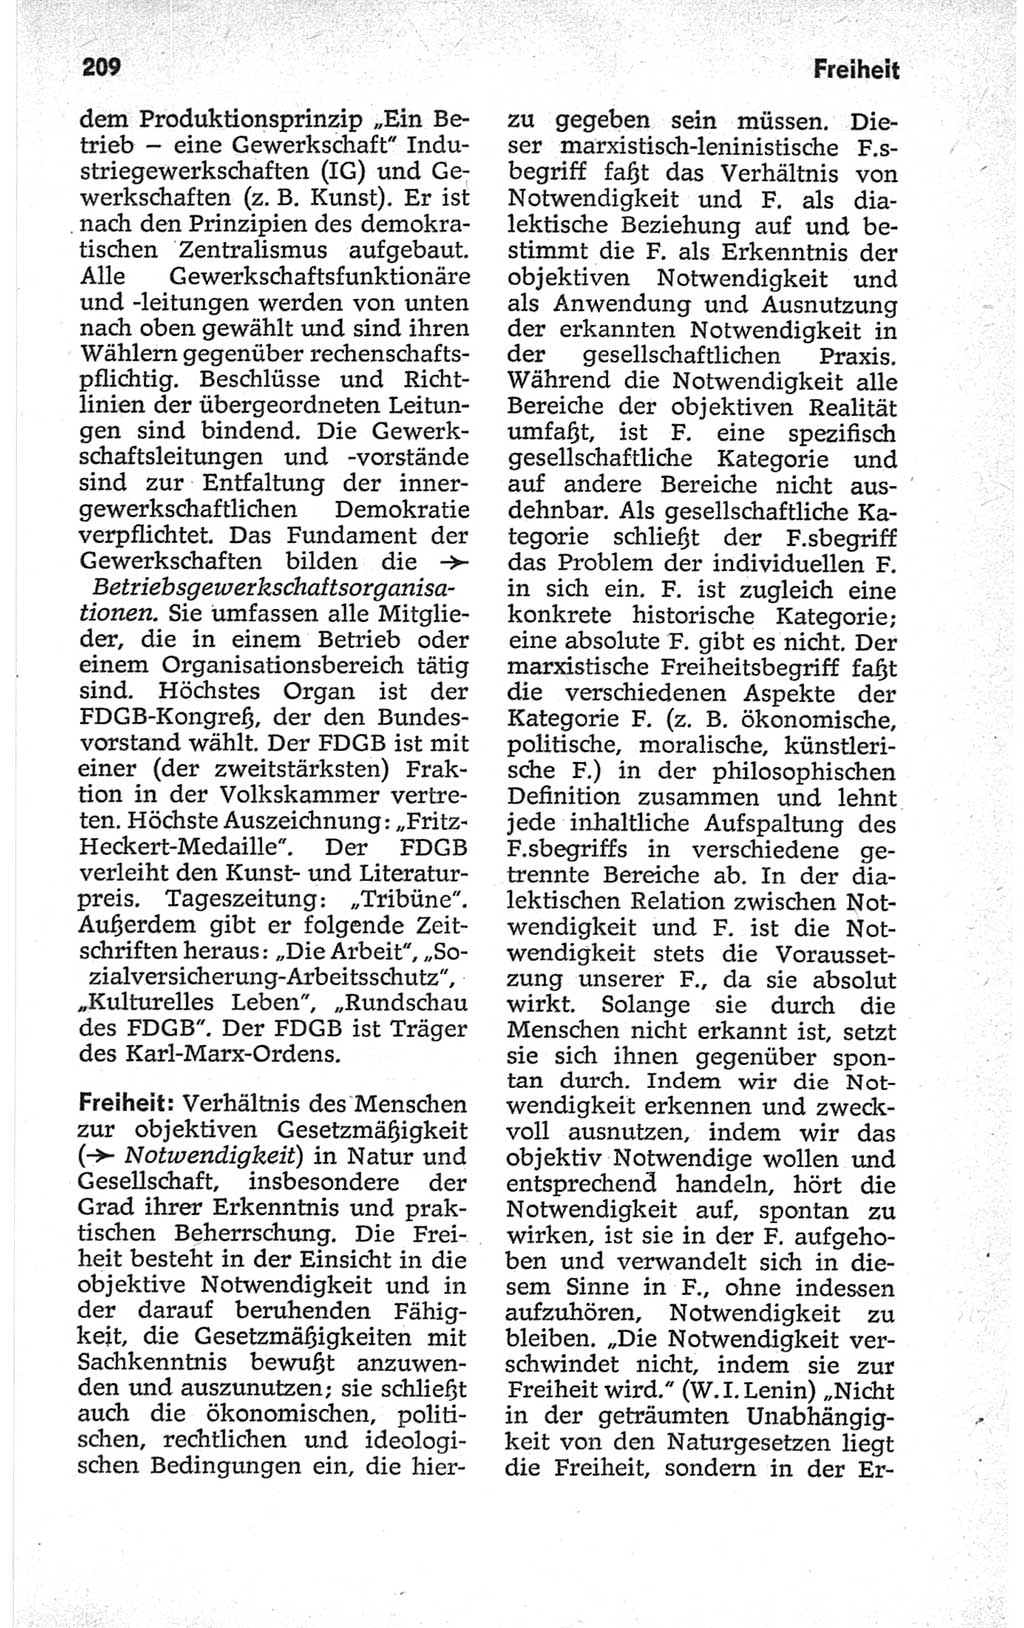 Kleines politisches Wörterbuch [Deutsche Demokratische Republik (DDR)] 1967, Seite 209 (Kl. pol. Wb. DDR 1967, S. 209)